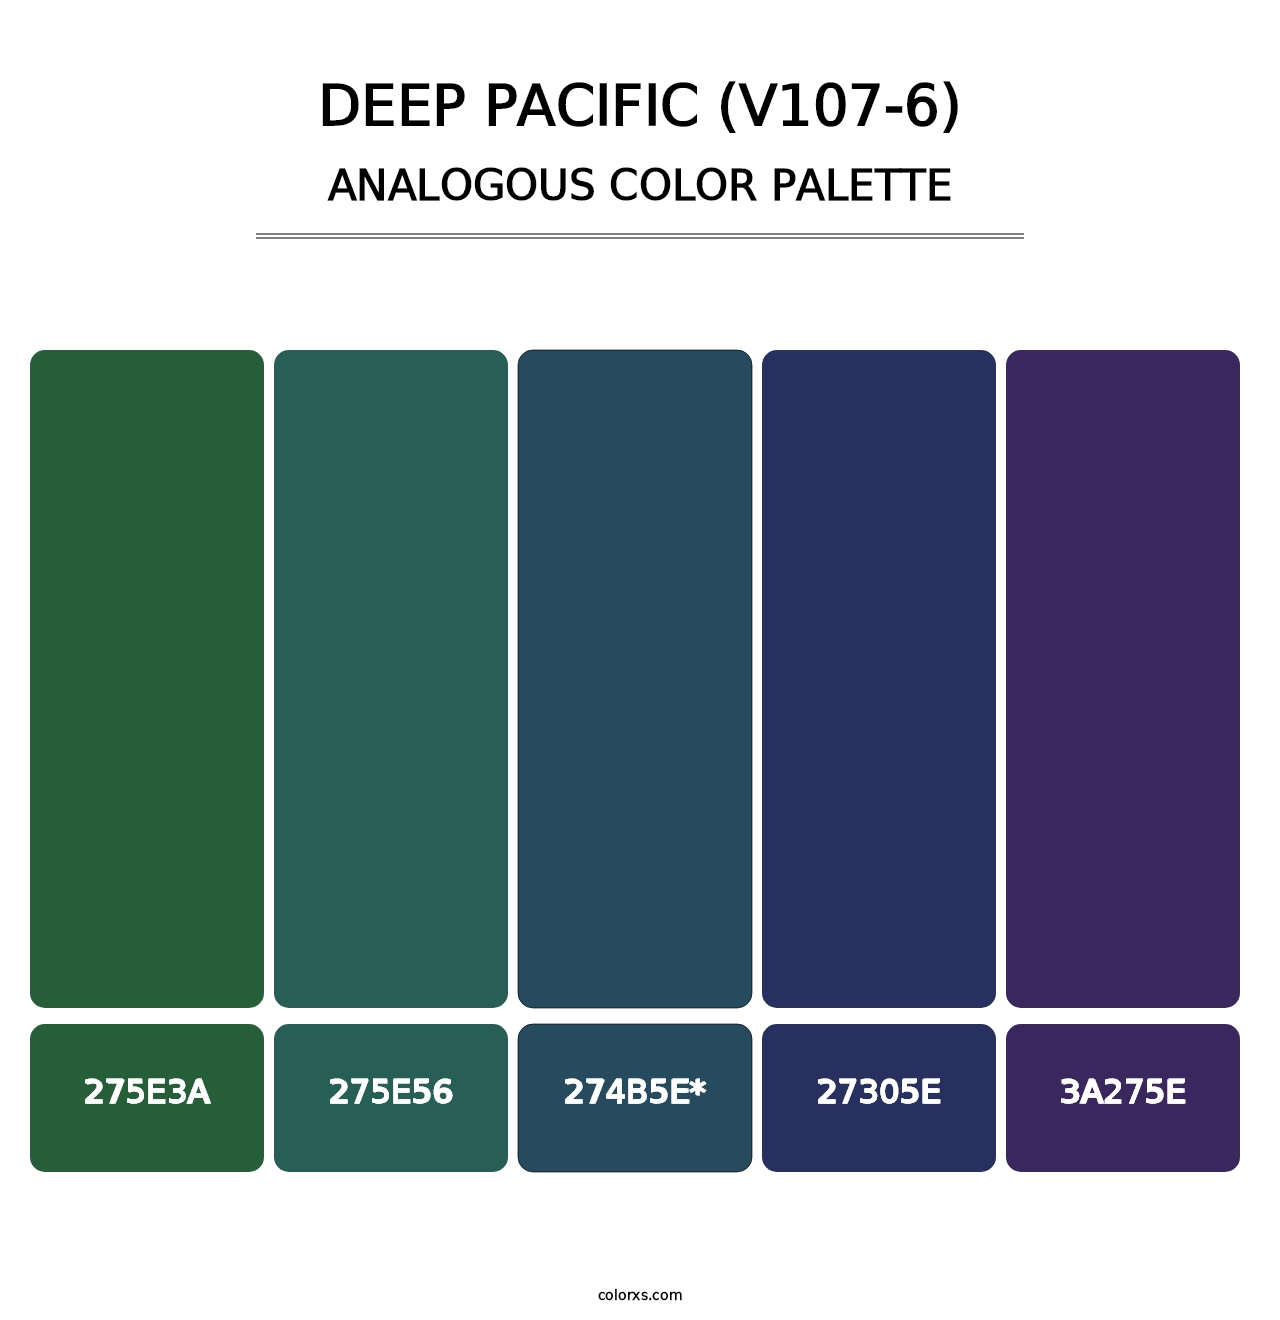 Deep Pacific (V107-6) - Analogous Color Palette